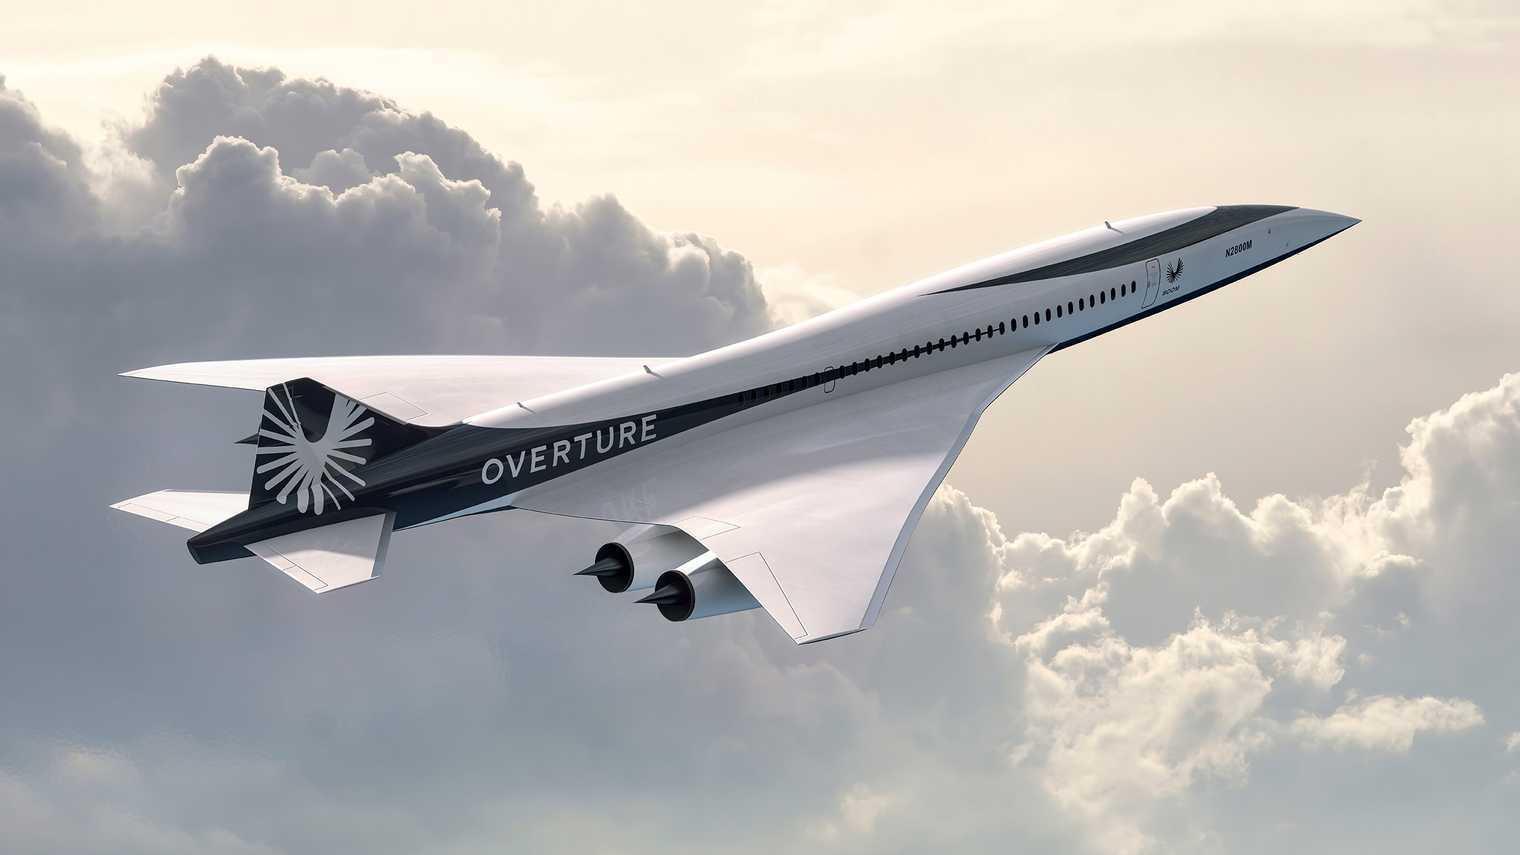 Voici Overture, le Concorde des temps modernes